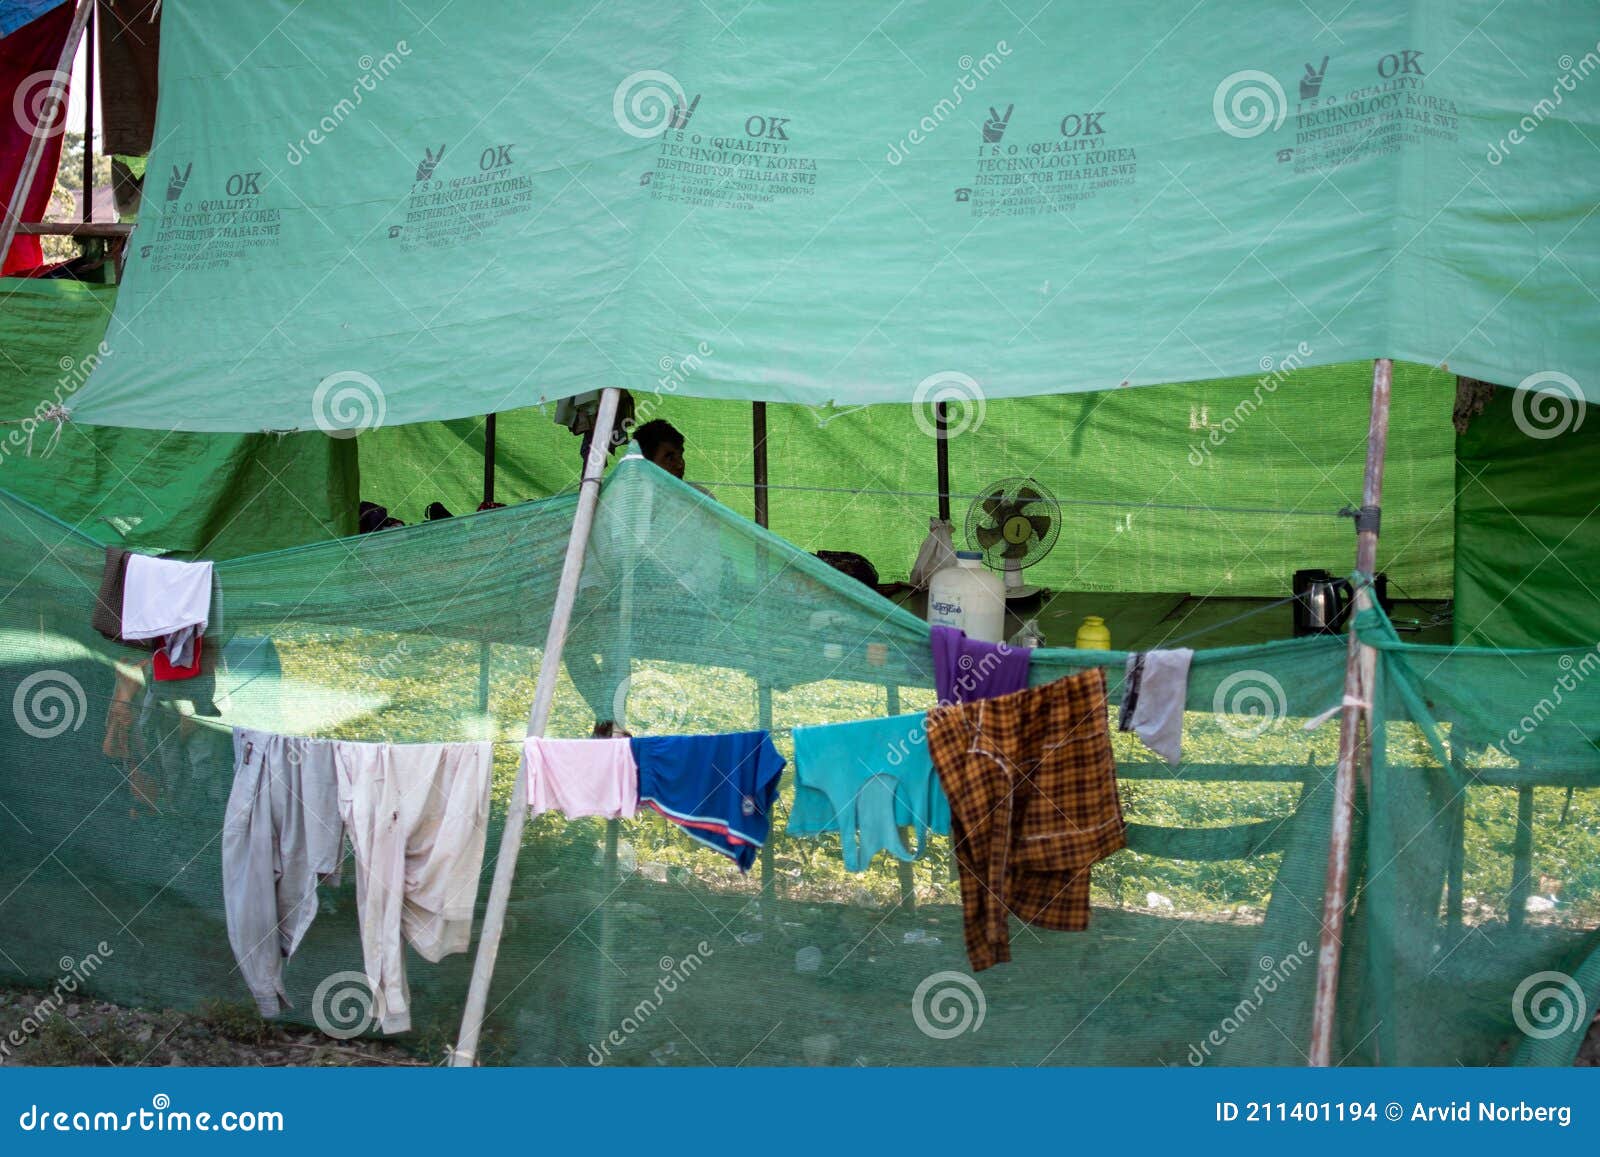 Secado De Ropa Por Un Refugio De Lona Verde En Myanmar Imagen de archivo editorial - Imagen de ropas, 211401194